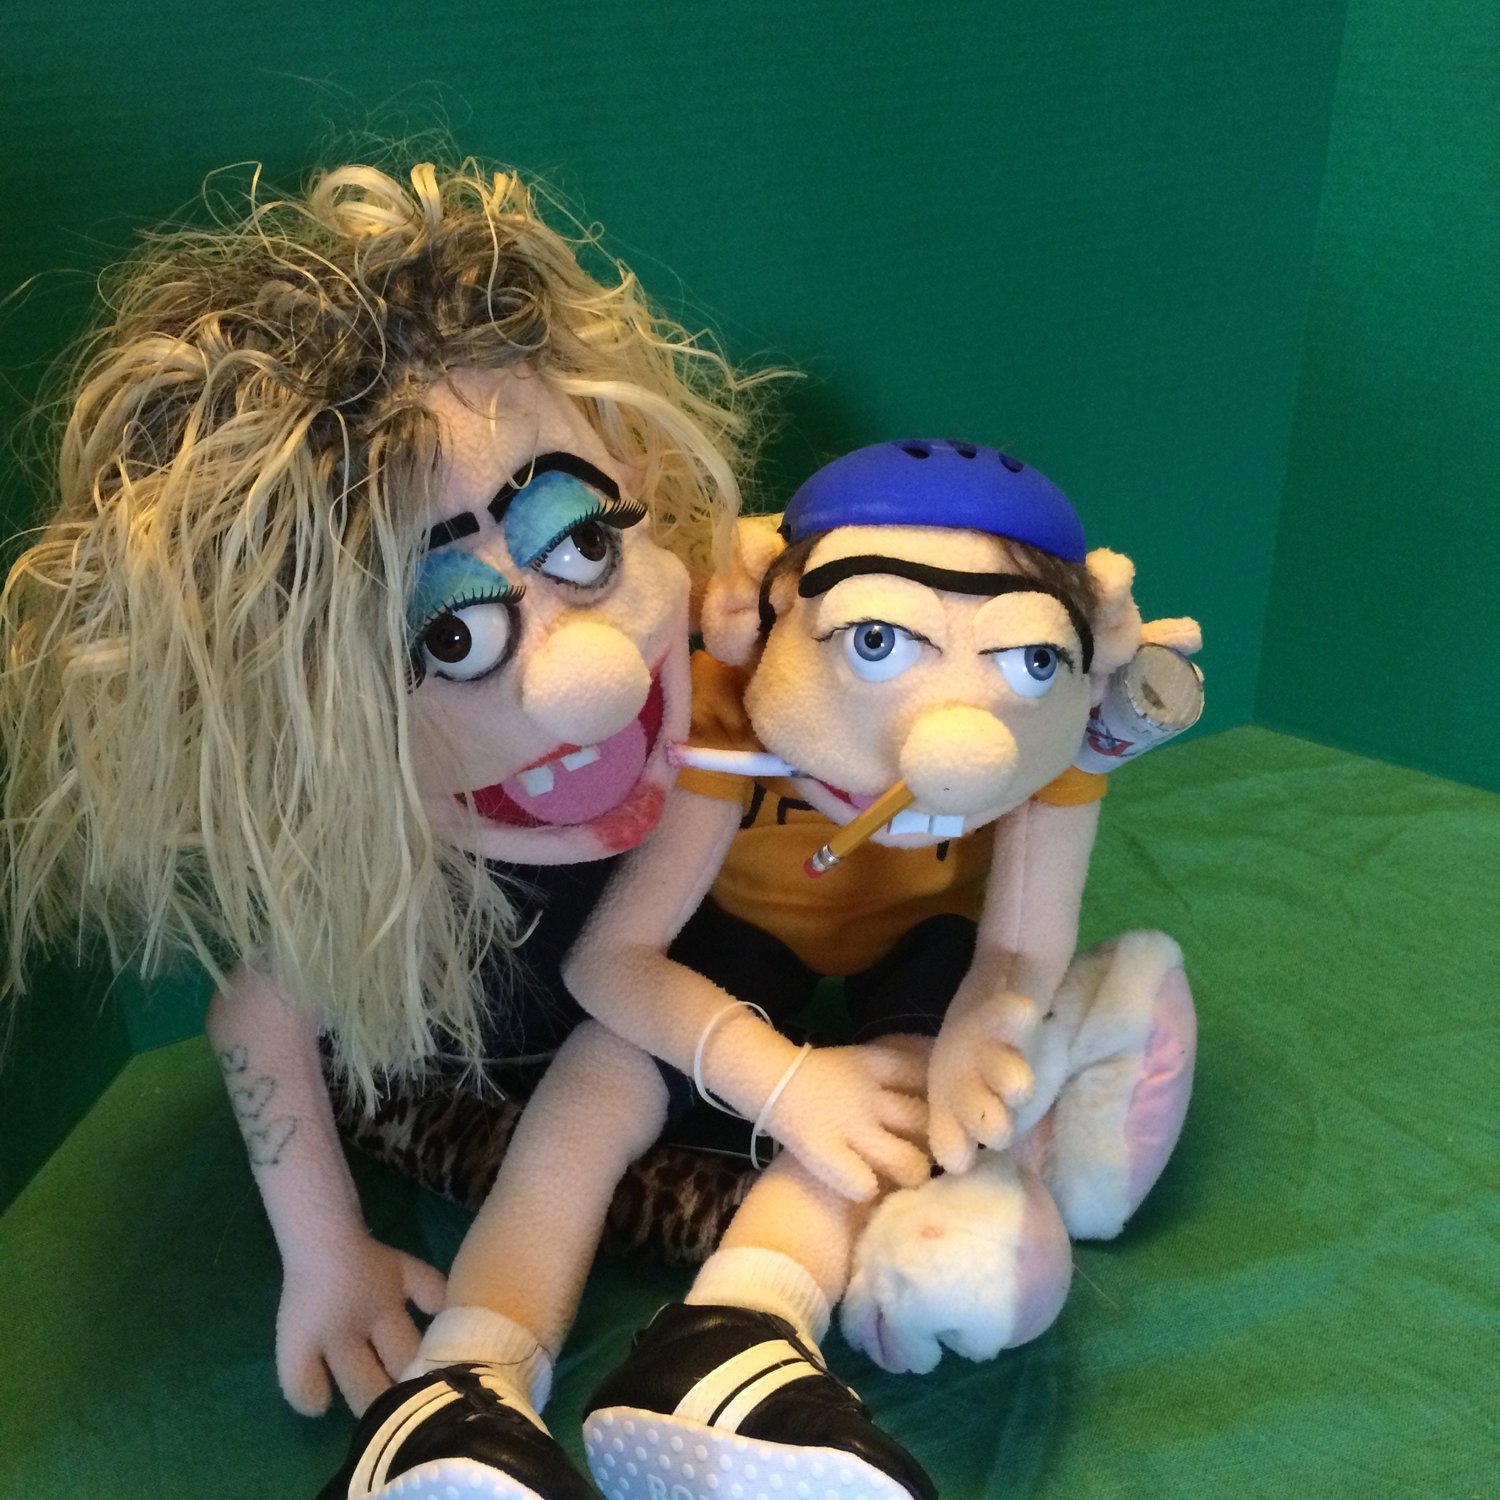 Marionnettes Jeffy fabriquées aux États-Unis par Evelinka Puppets